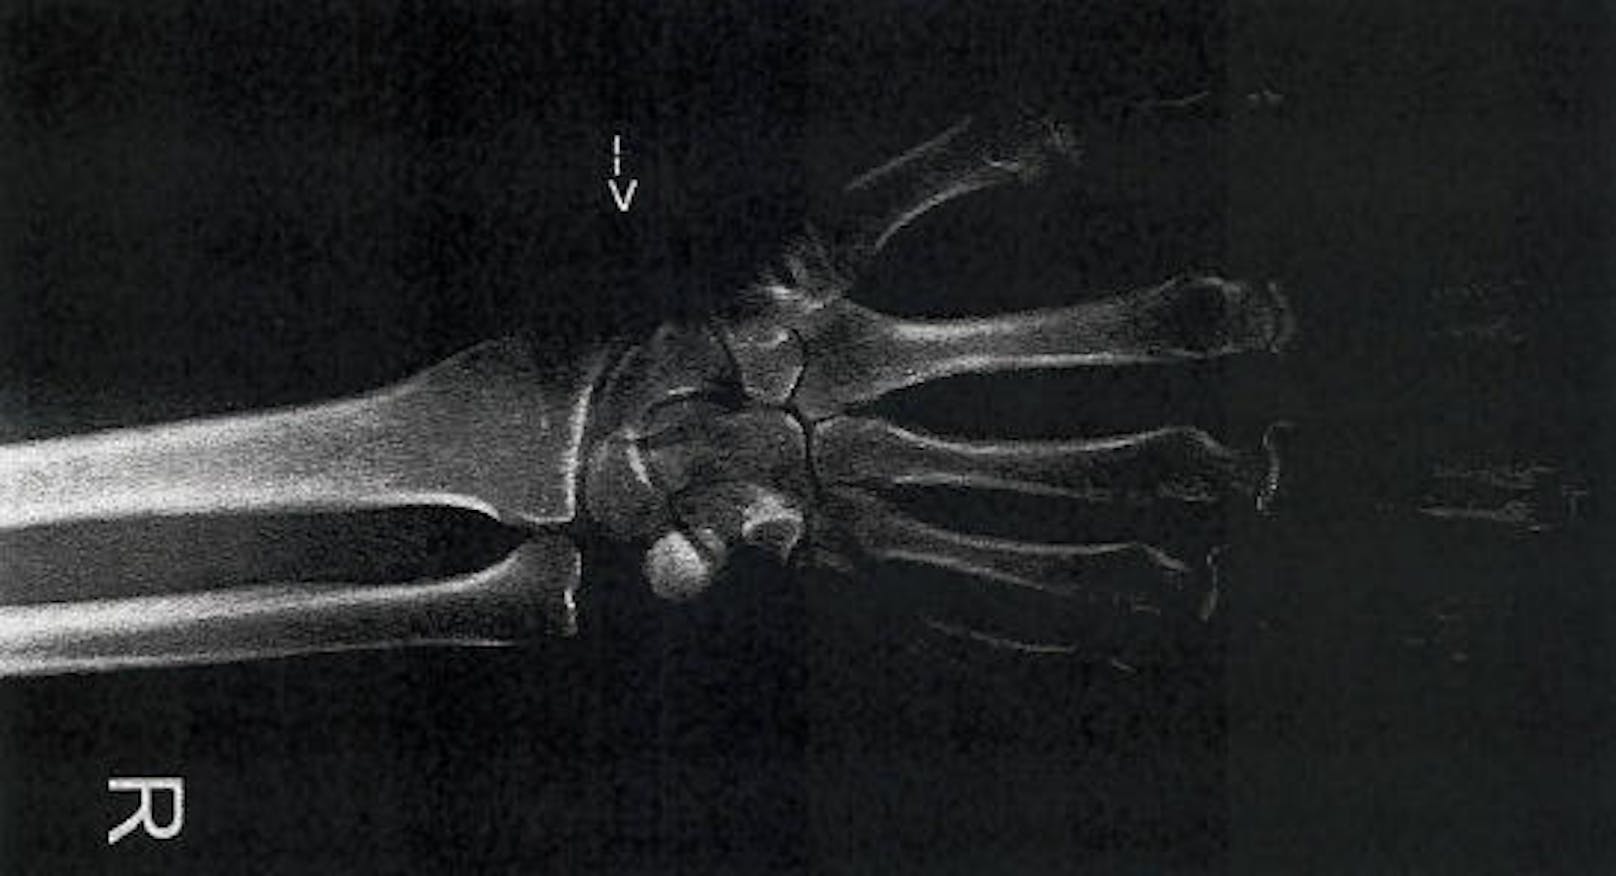 Röntgenaufnahme der rechten Hand vom 7.12.2017.